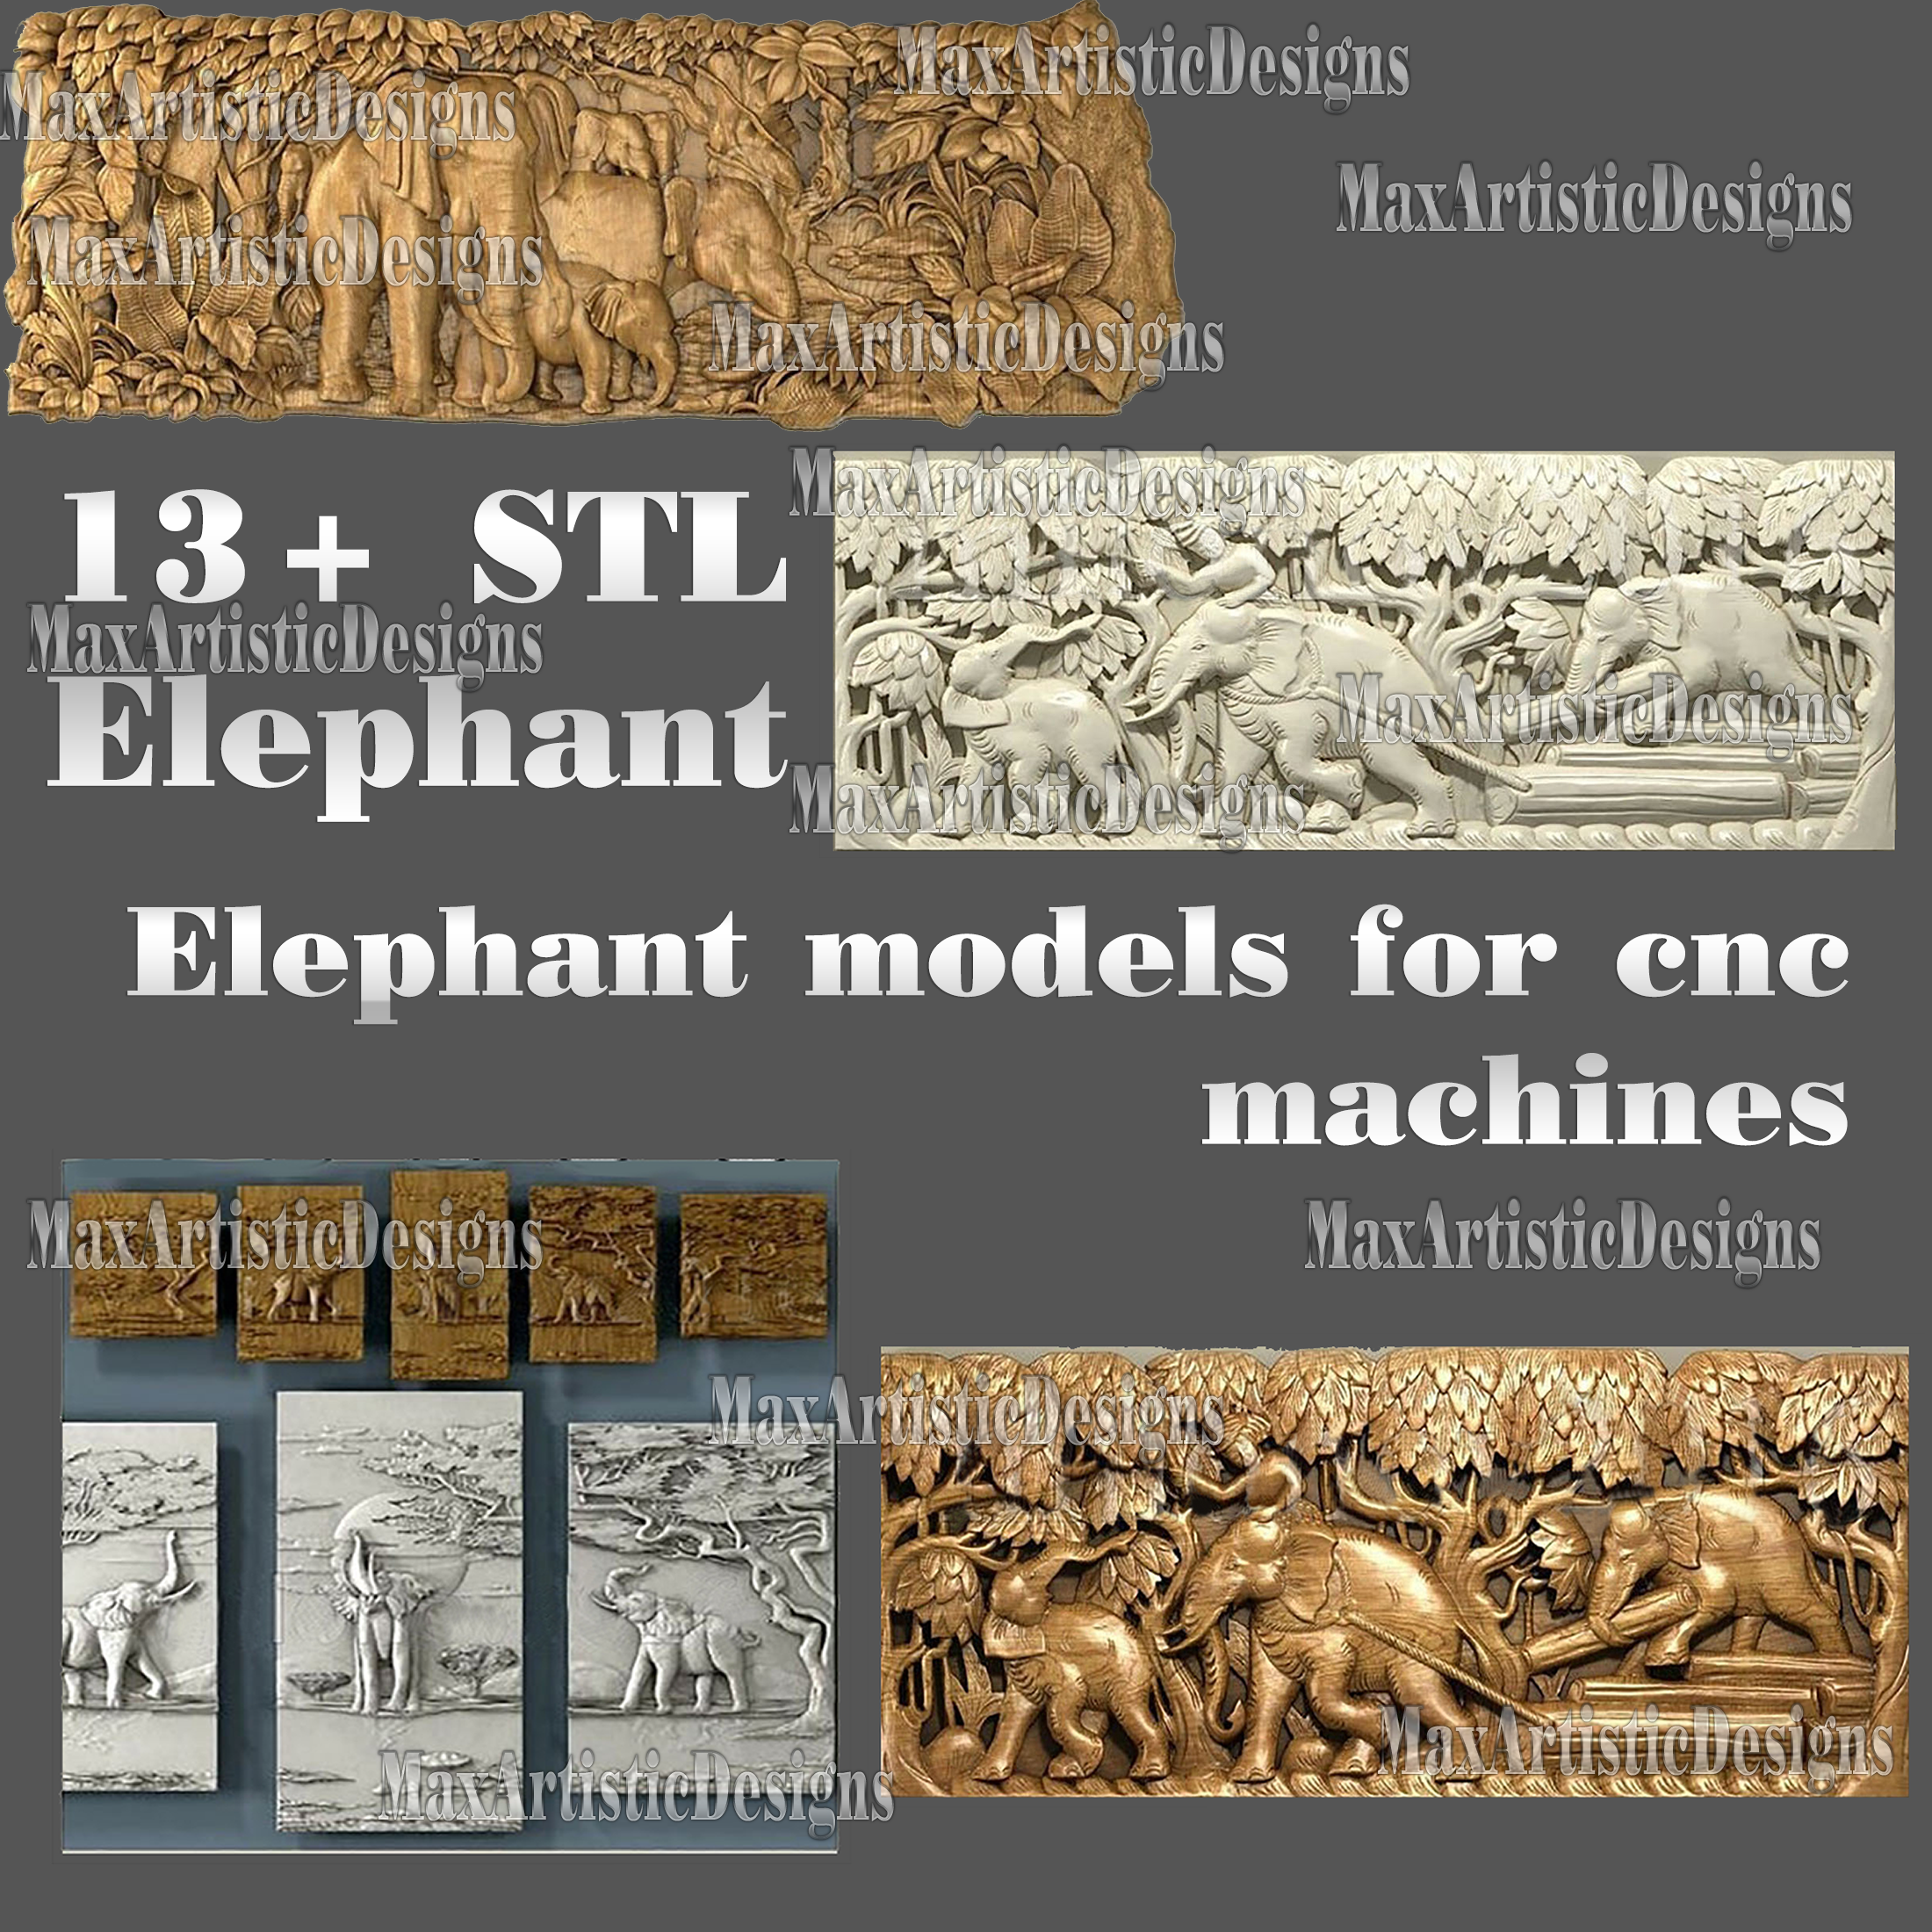 8+ éléphants relief 3d stl modèles bundle pour artcam aspire cnc routeur téléchargement numérique